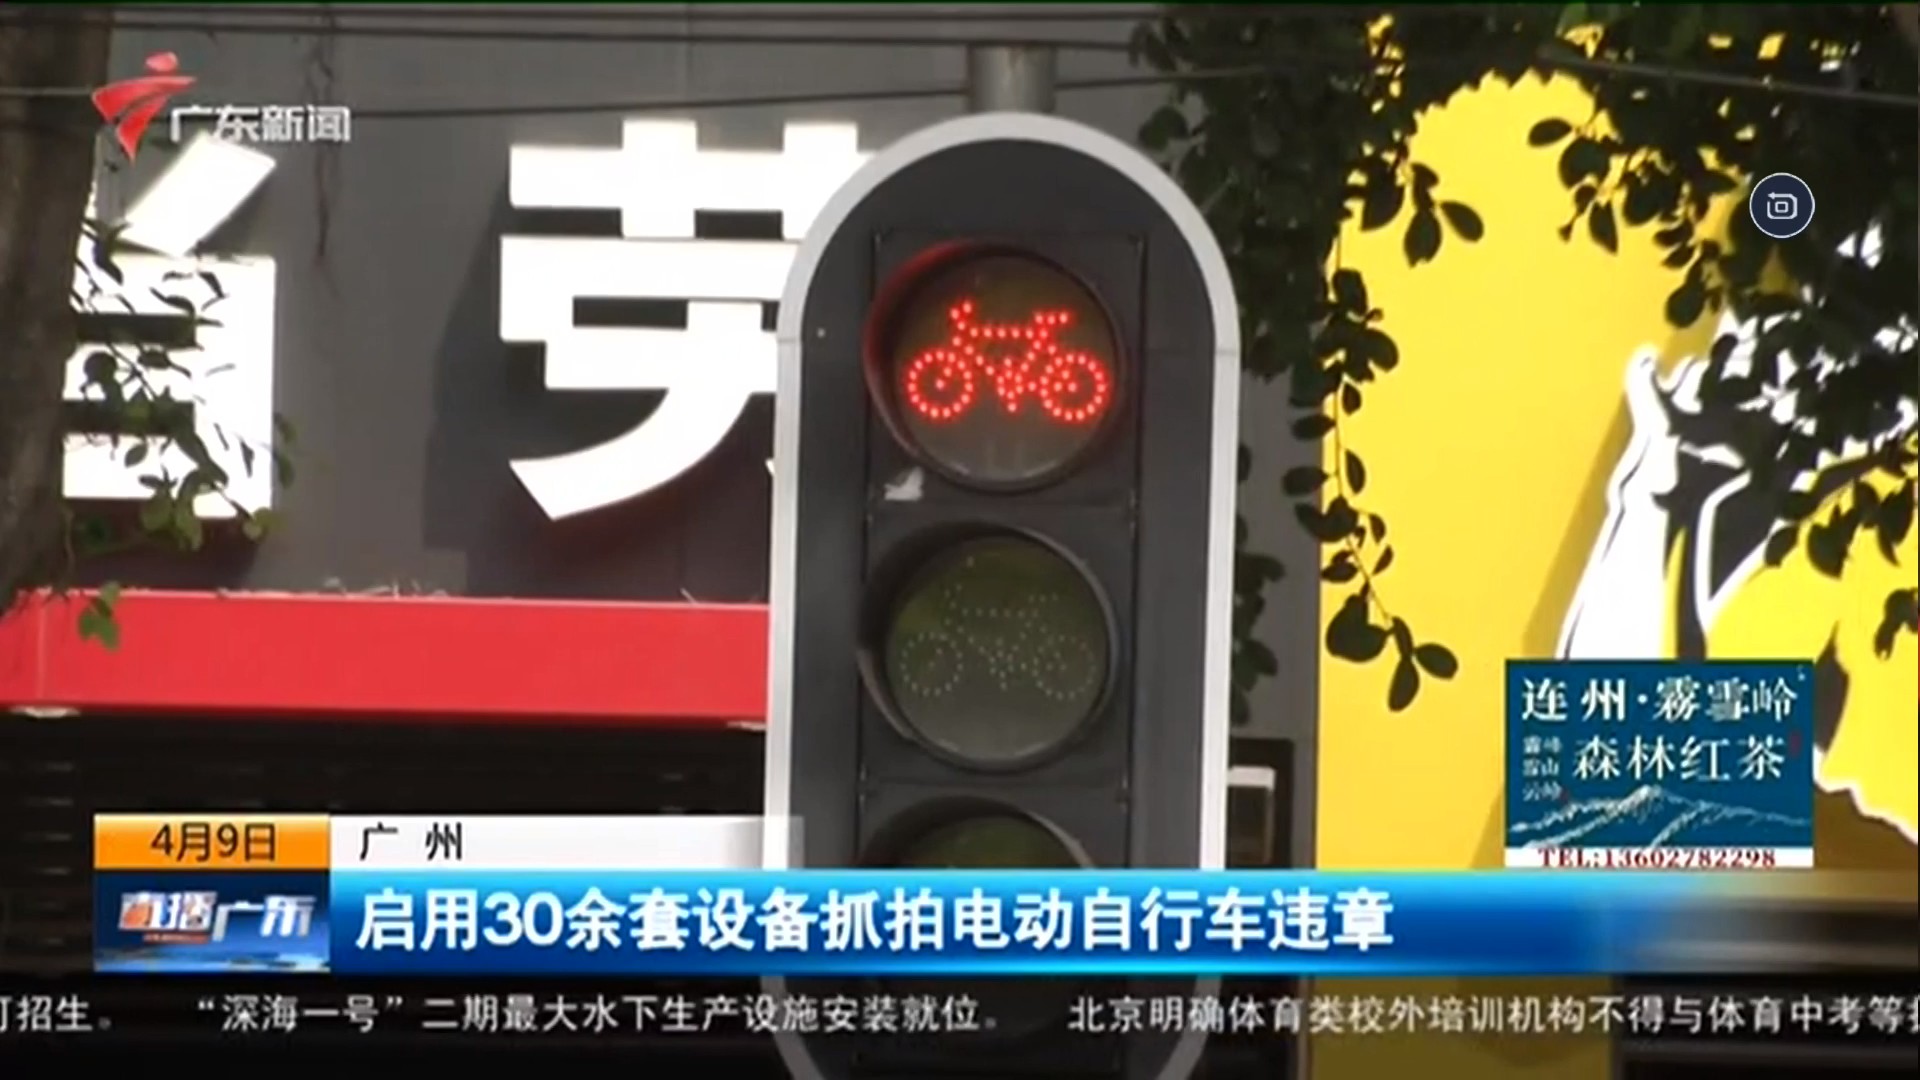 广东新闻频道 直播广东 【广州】启用30余套设备抓拍电动自行车违章